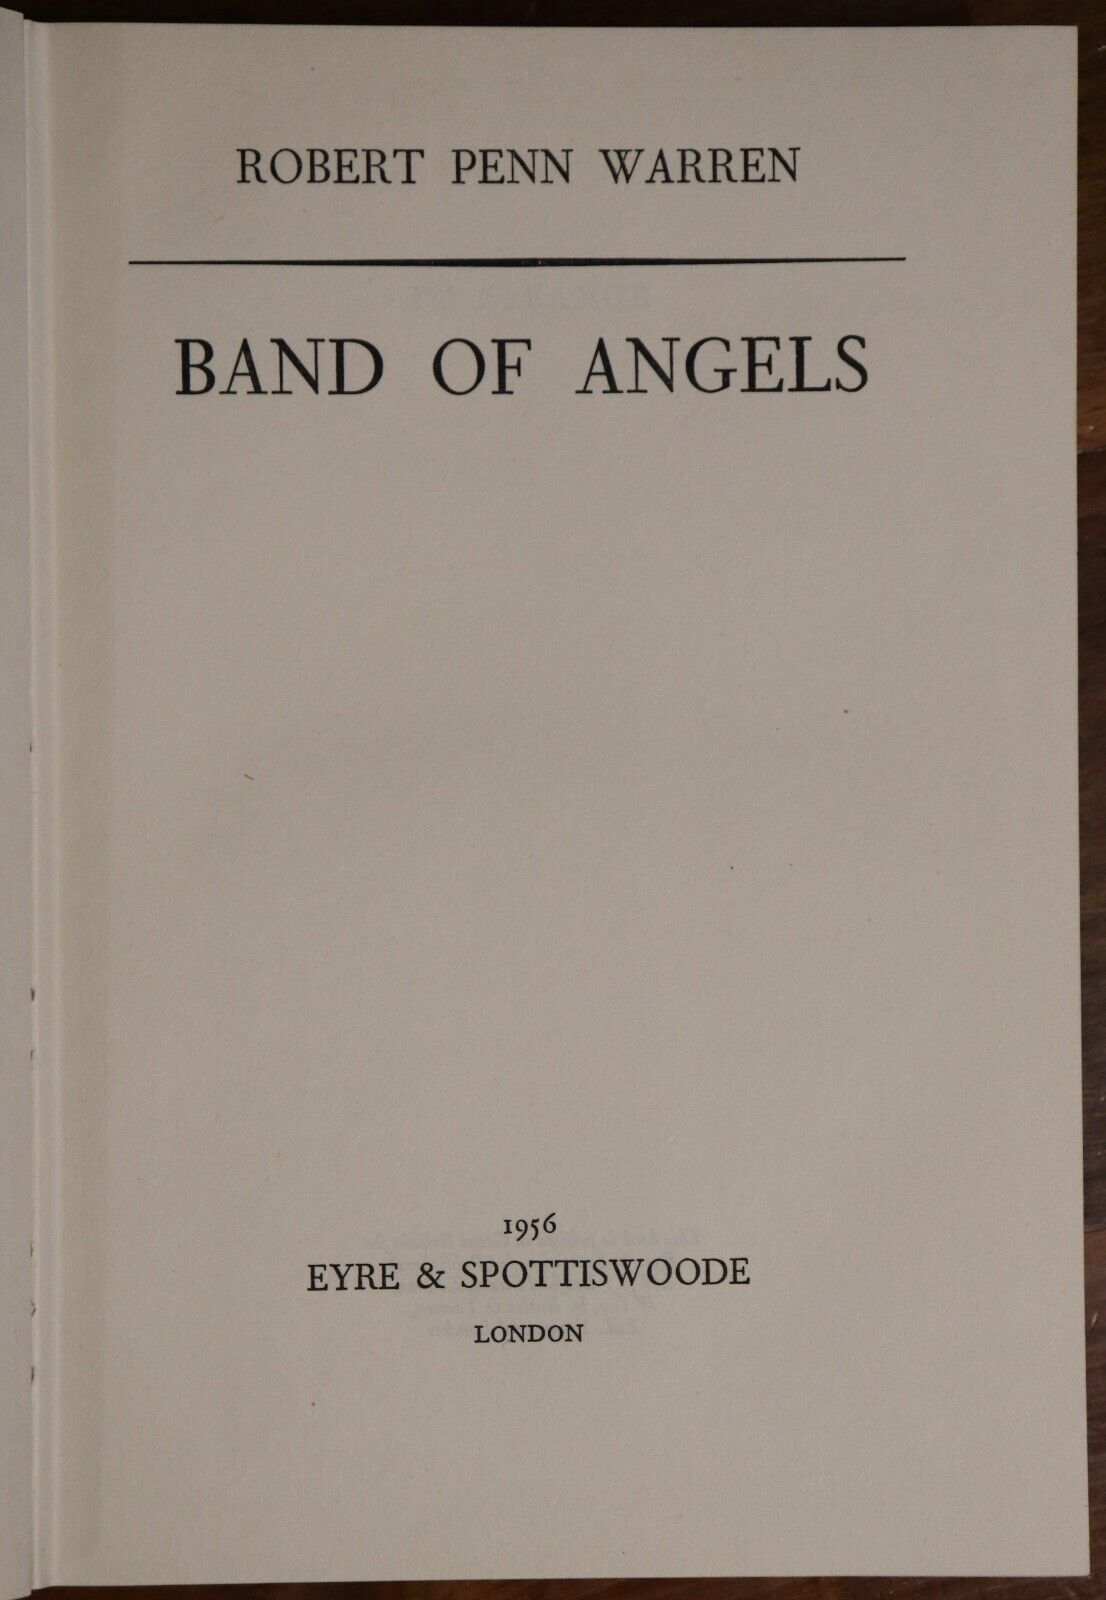 Band Of Angels by Robert Penn Warren - 1956 - American Civil War Literature Book - 0